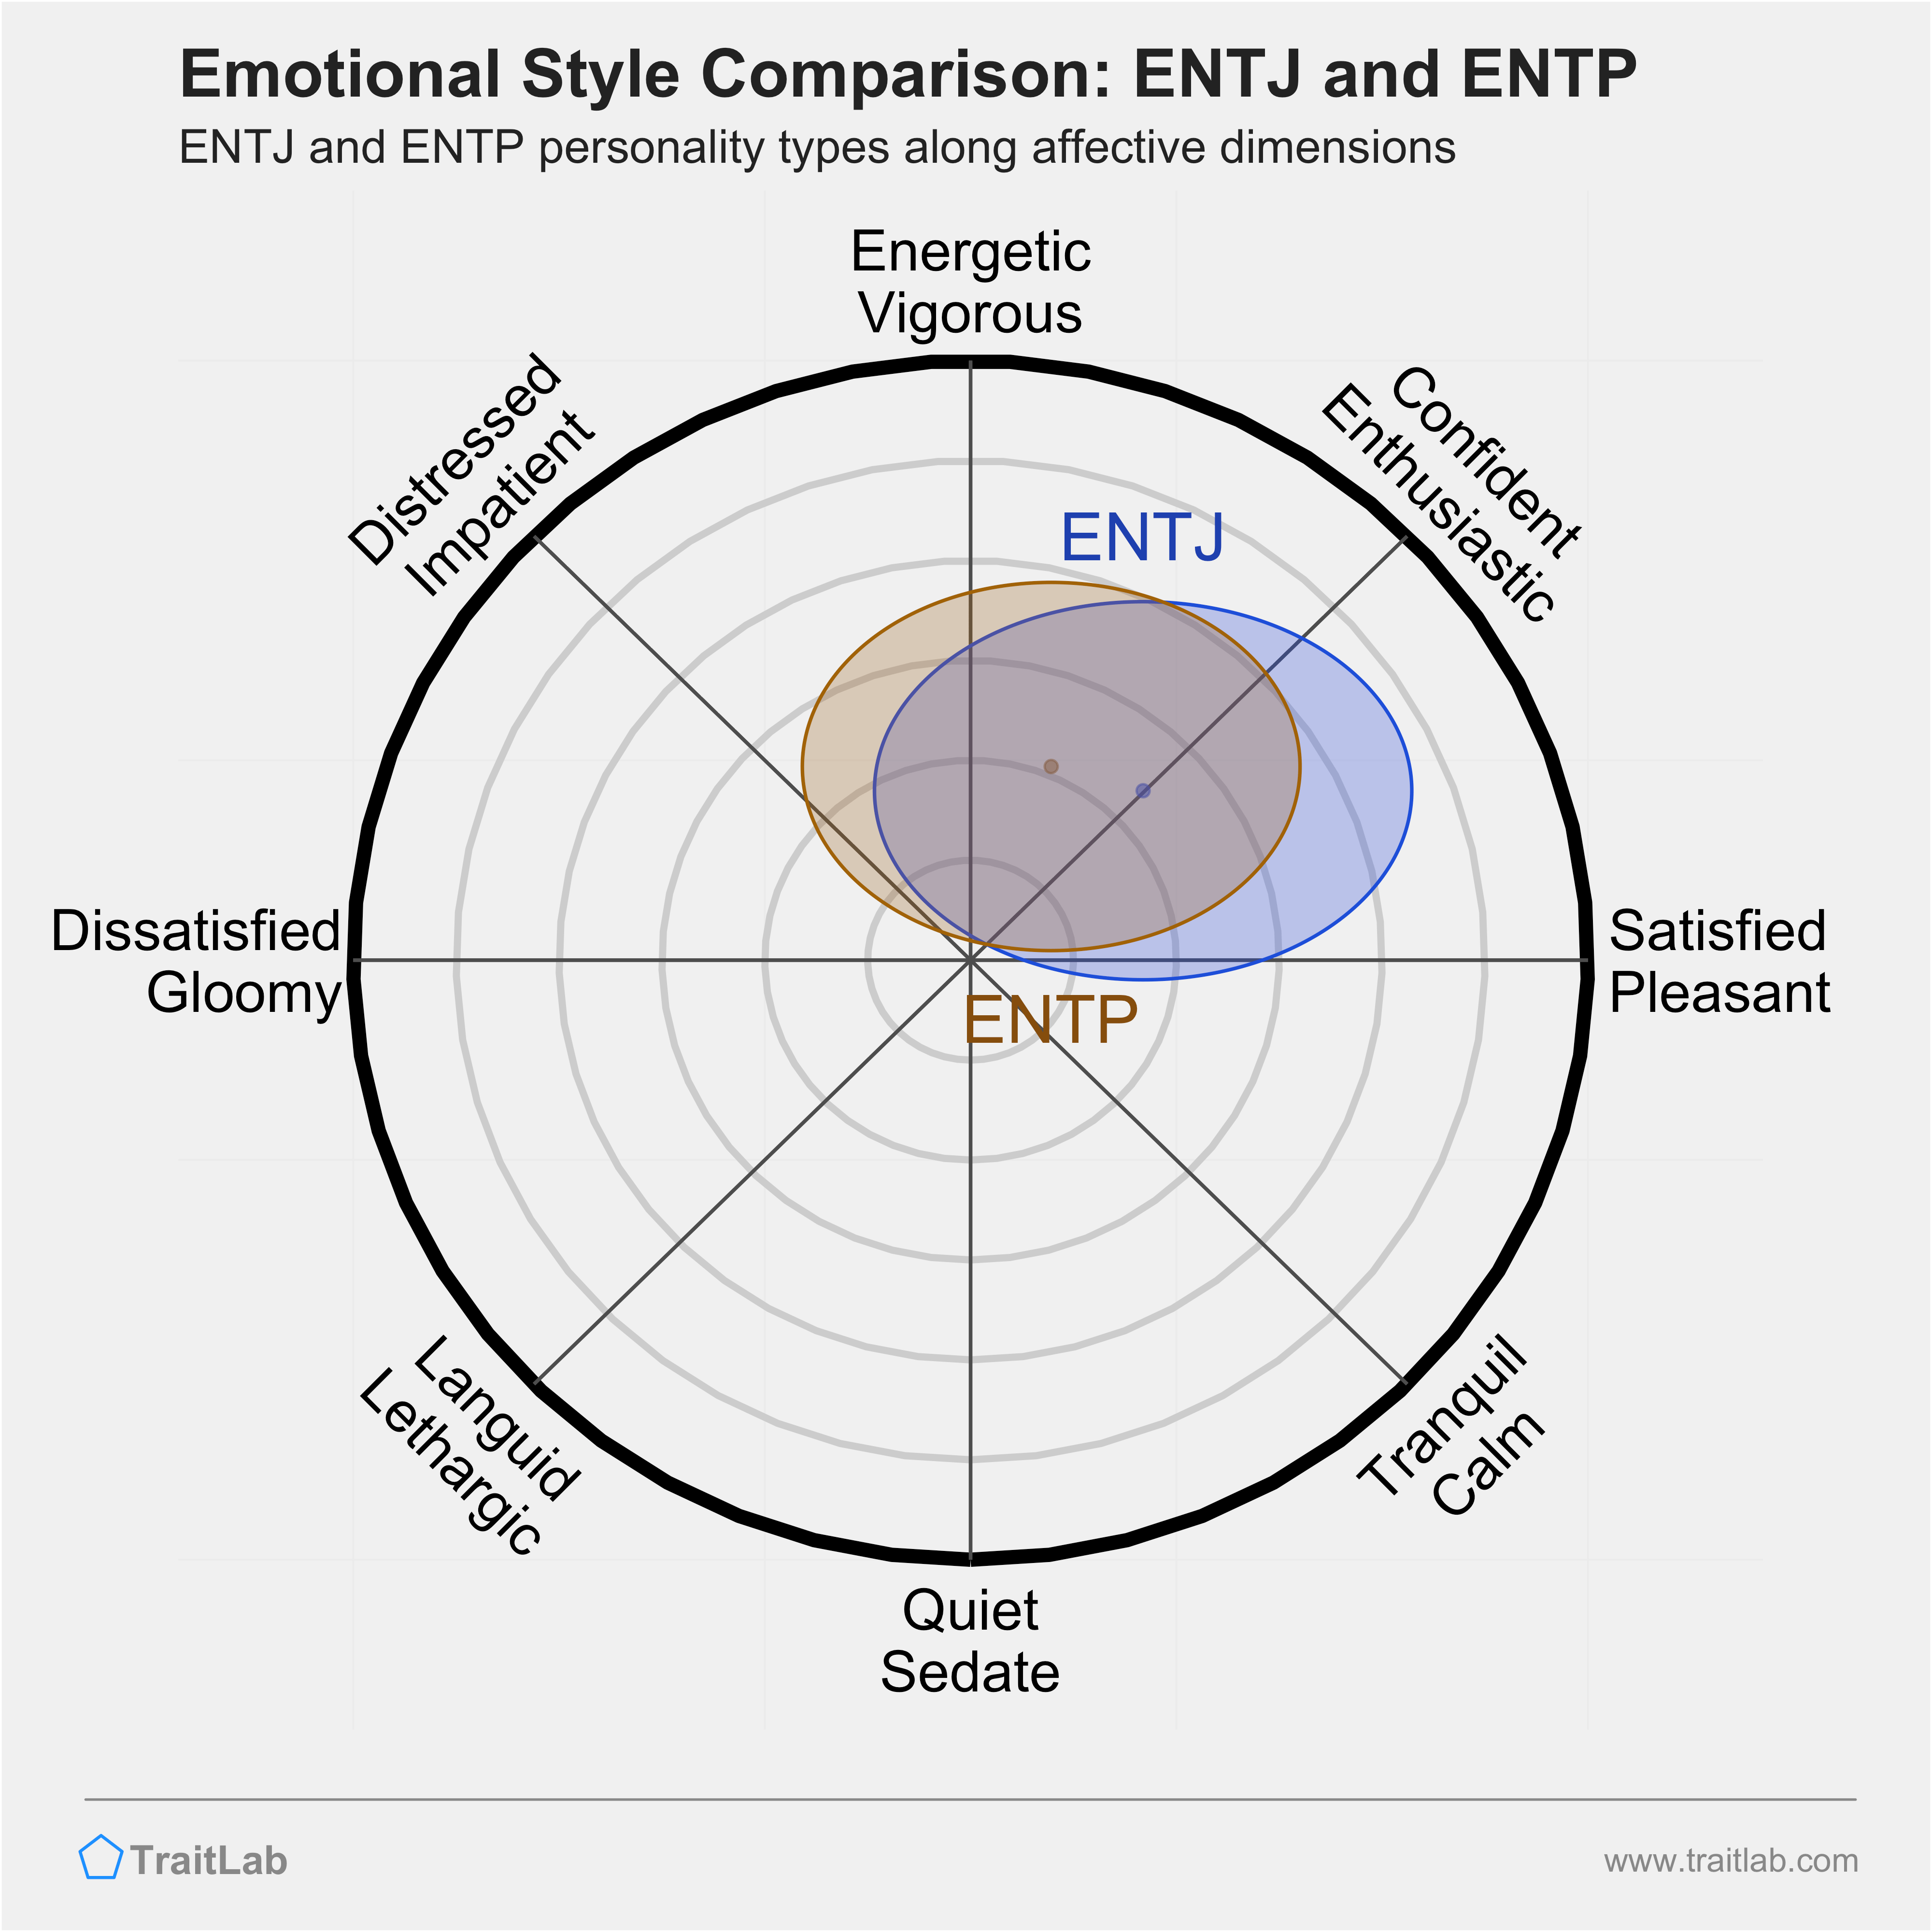 ENTJ and ENTP comparison across emotional (affective) dimensions